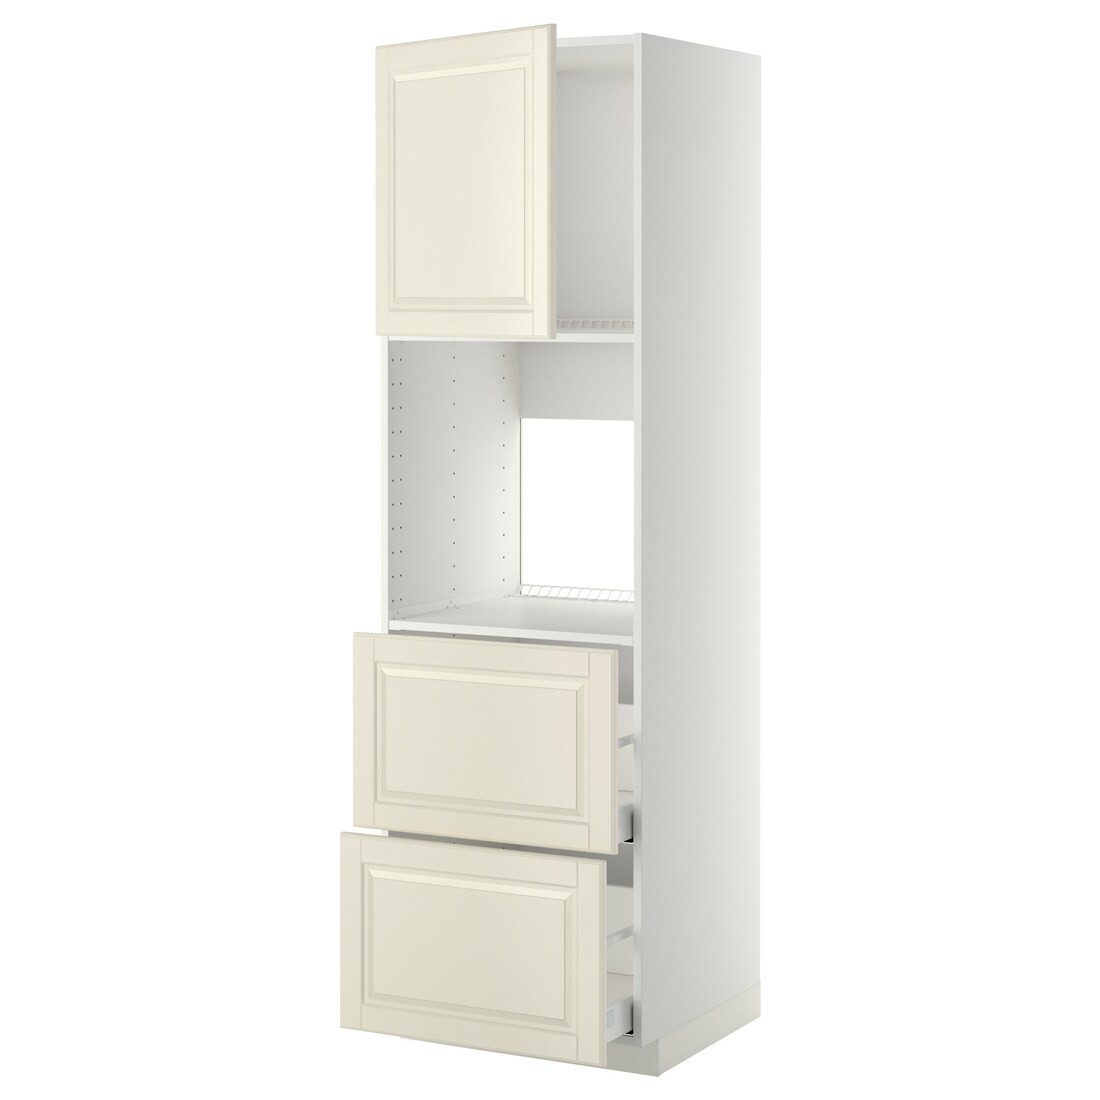 IKEA METOD МЕТОД / MAXIMERA МАКСИМЕРА Высокий шкаф для духовки с дверцей / ящиками, белый / Bodbyn кремовый, 60x60x200 см 19469139 | 194.691.39